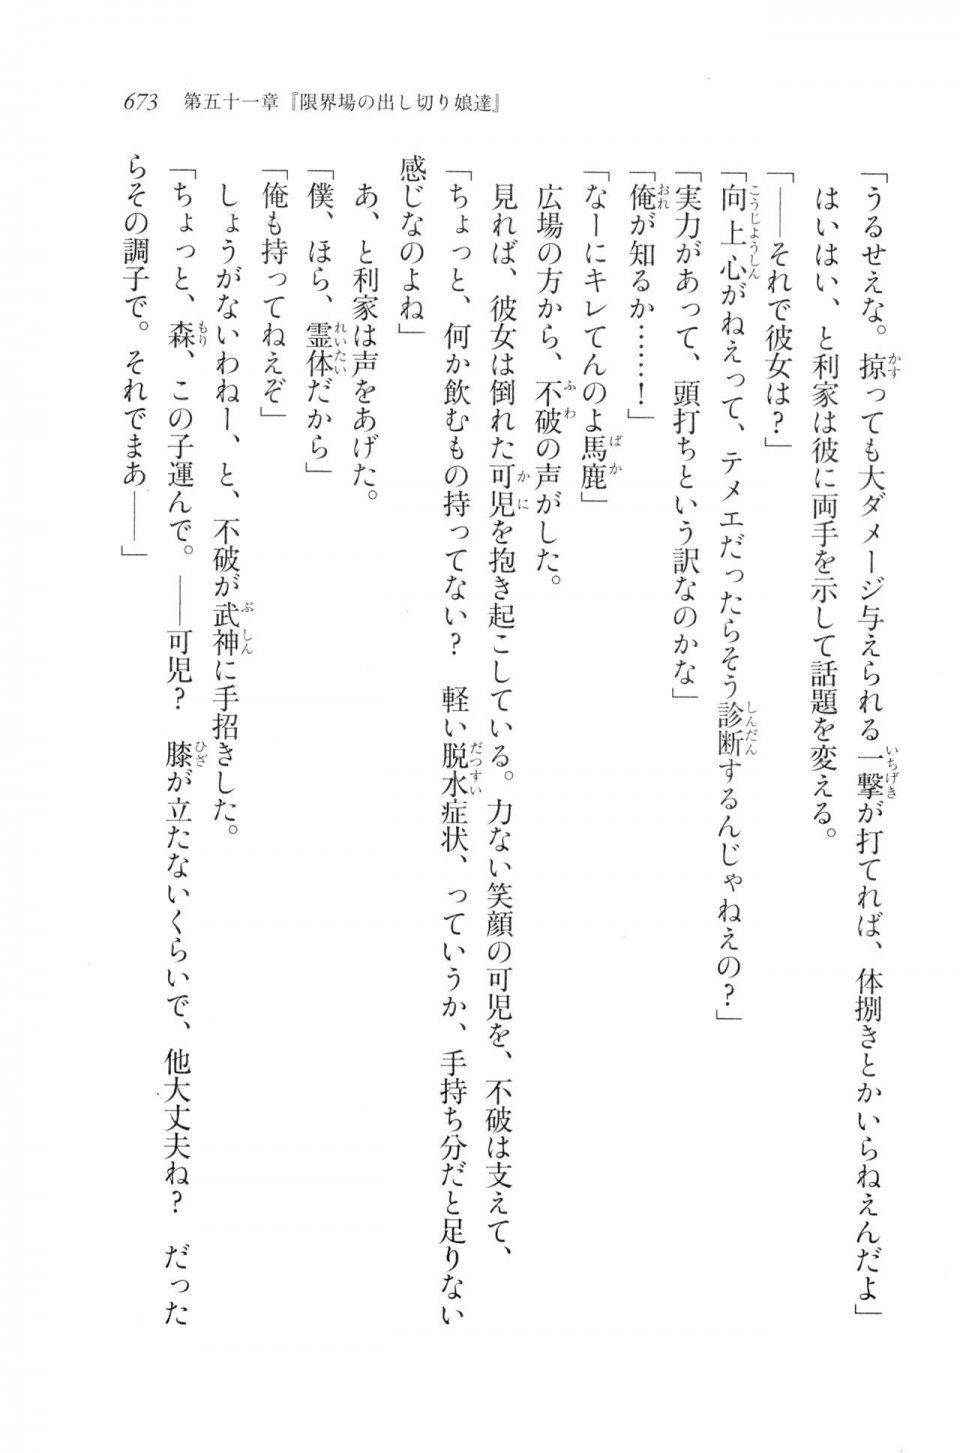 Kyoukai Senjou no Horizon LN Vol 20(8B) - Photo #673